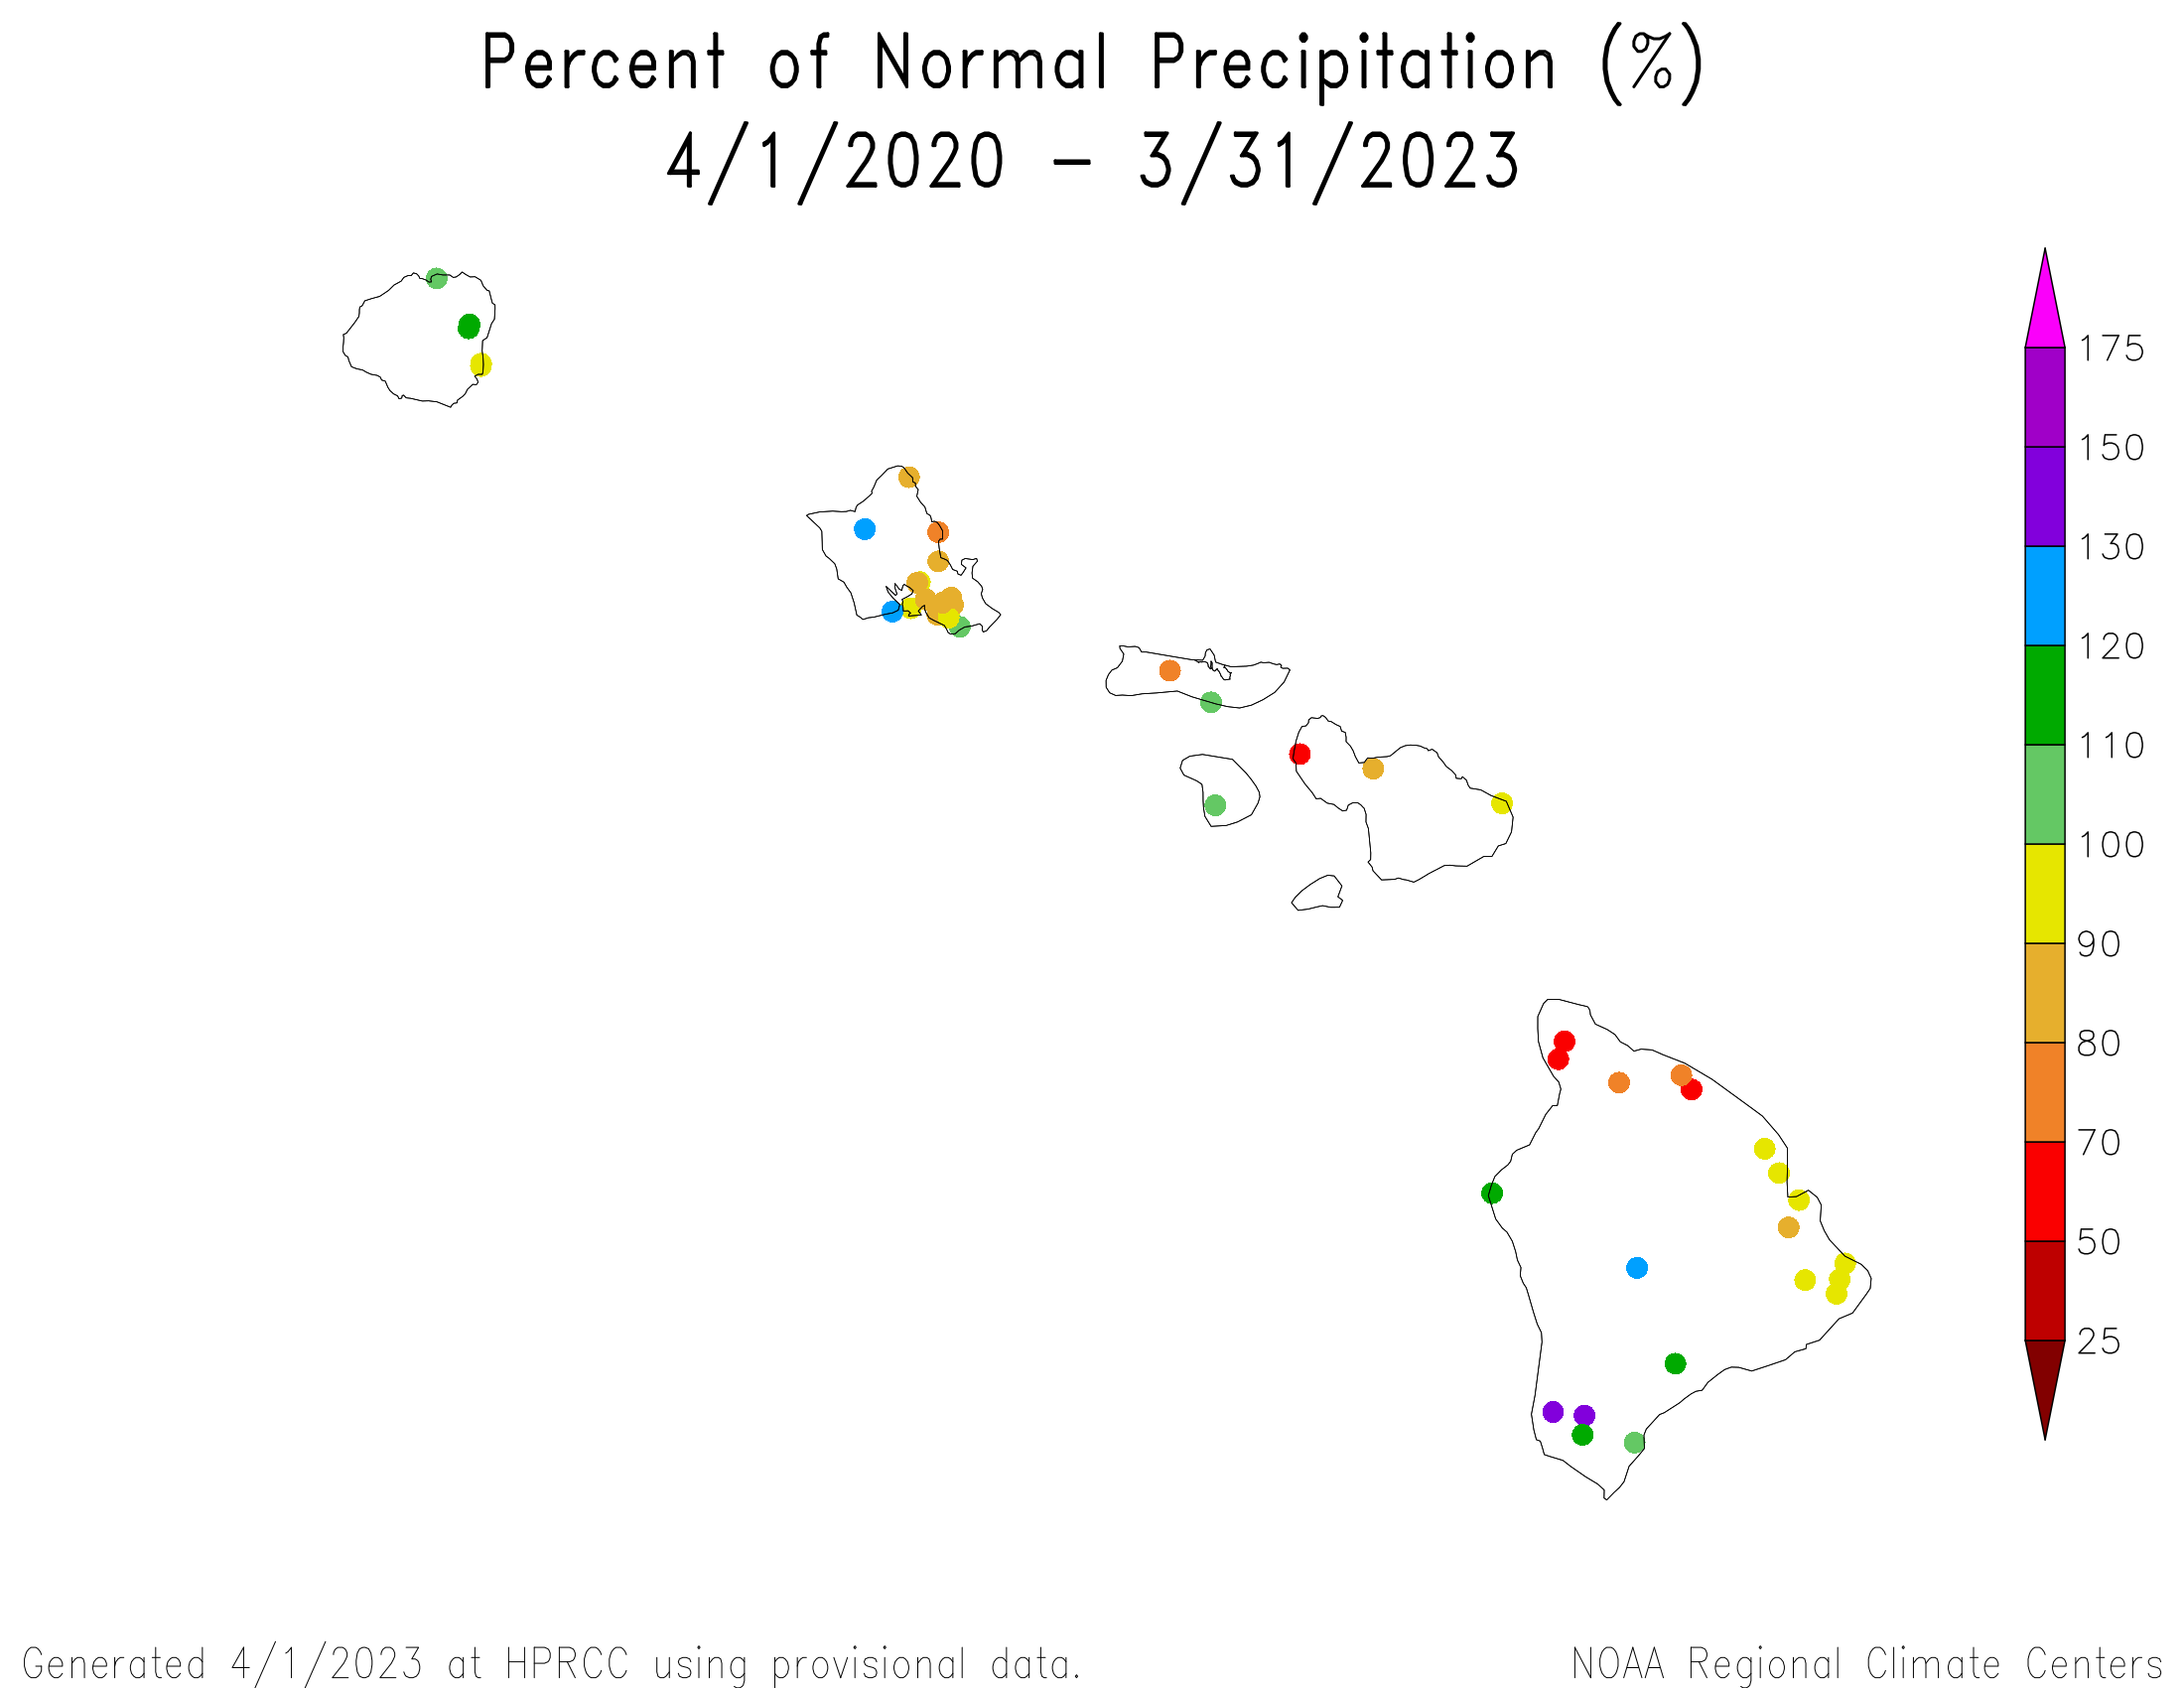 Hawaii Percent of Normal Precipitation, April 2020-March 2023